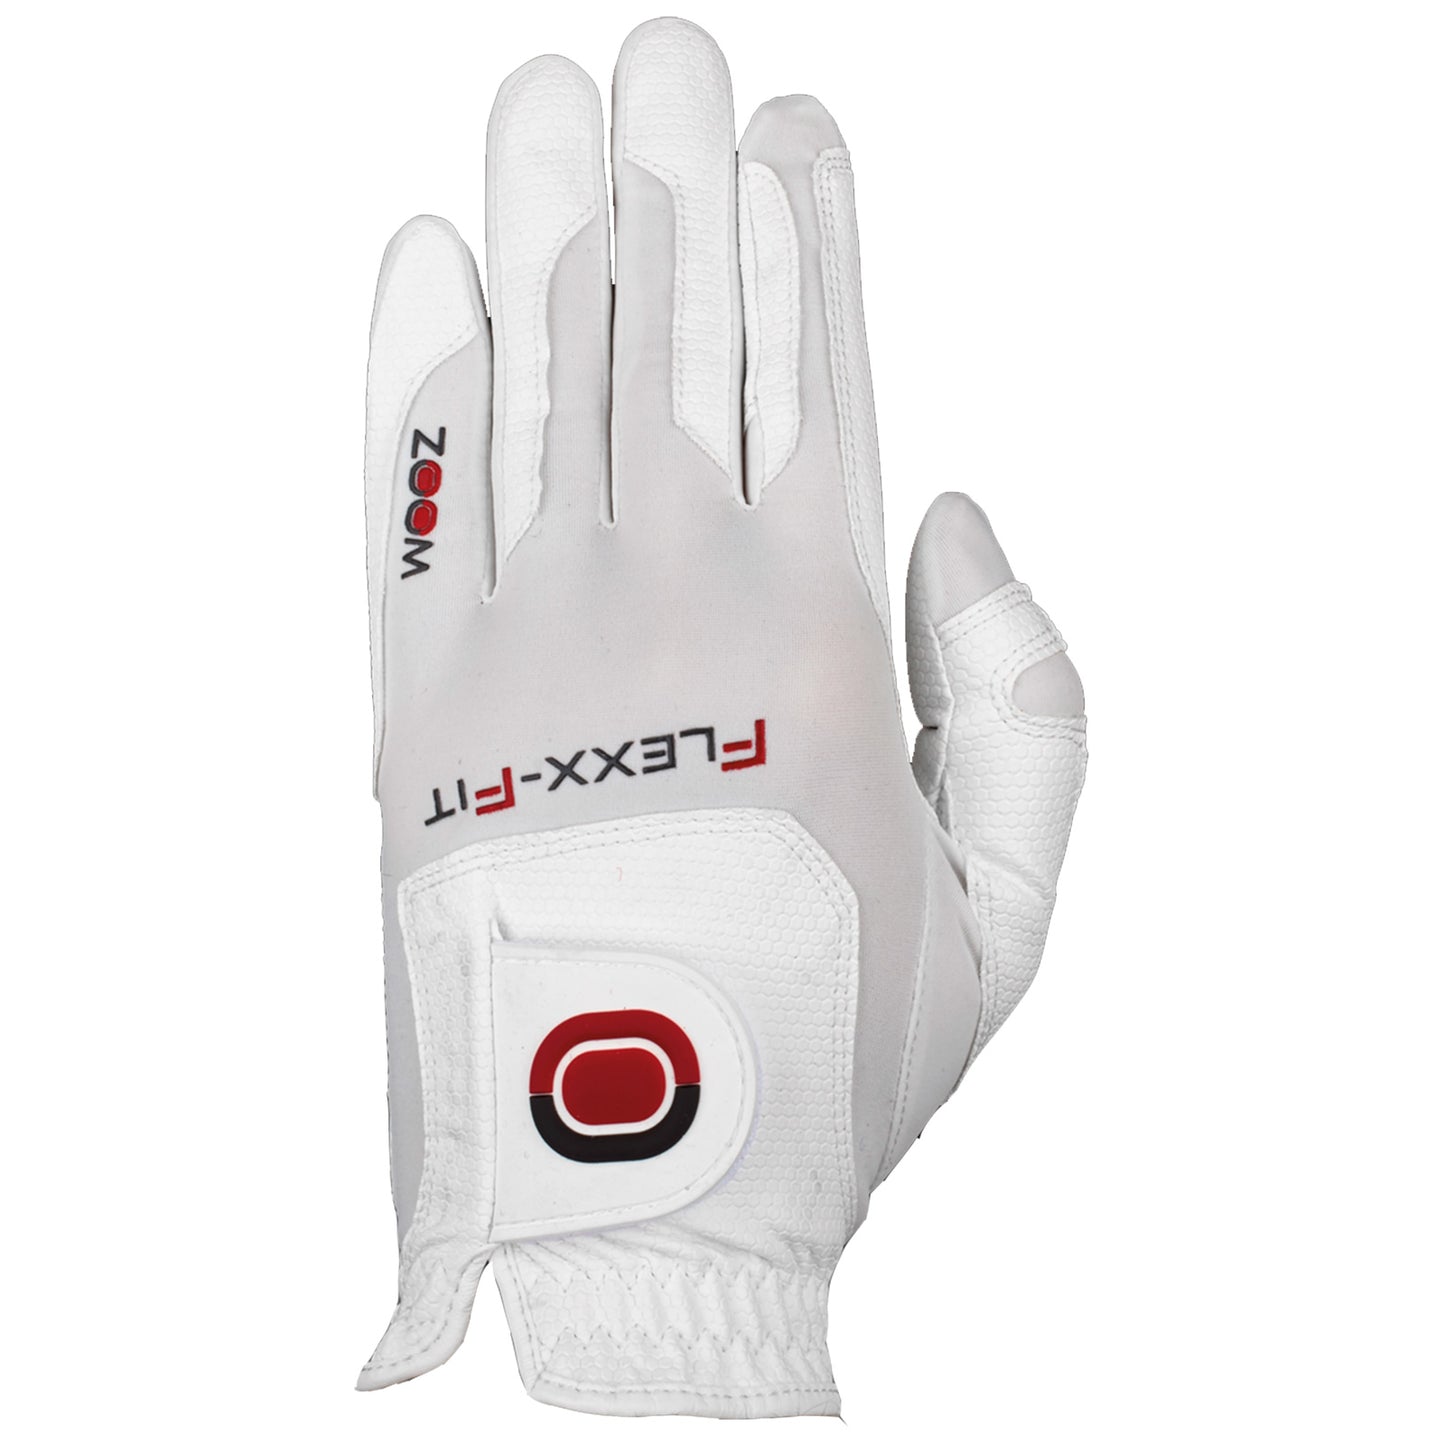 Zoom Junior Left Hand Flexx Fit WEATHER Golf Glove - One Size